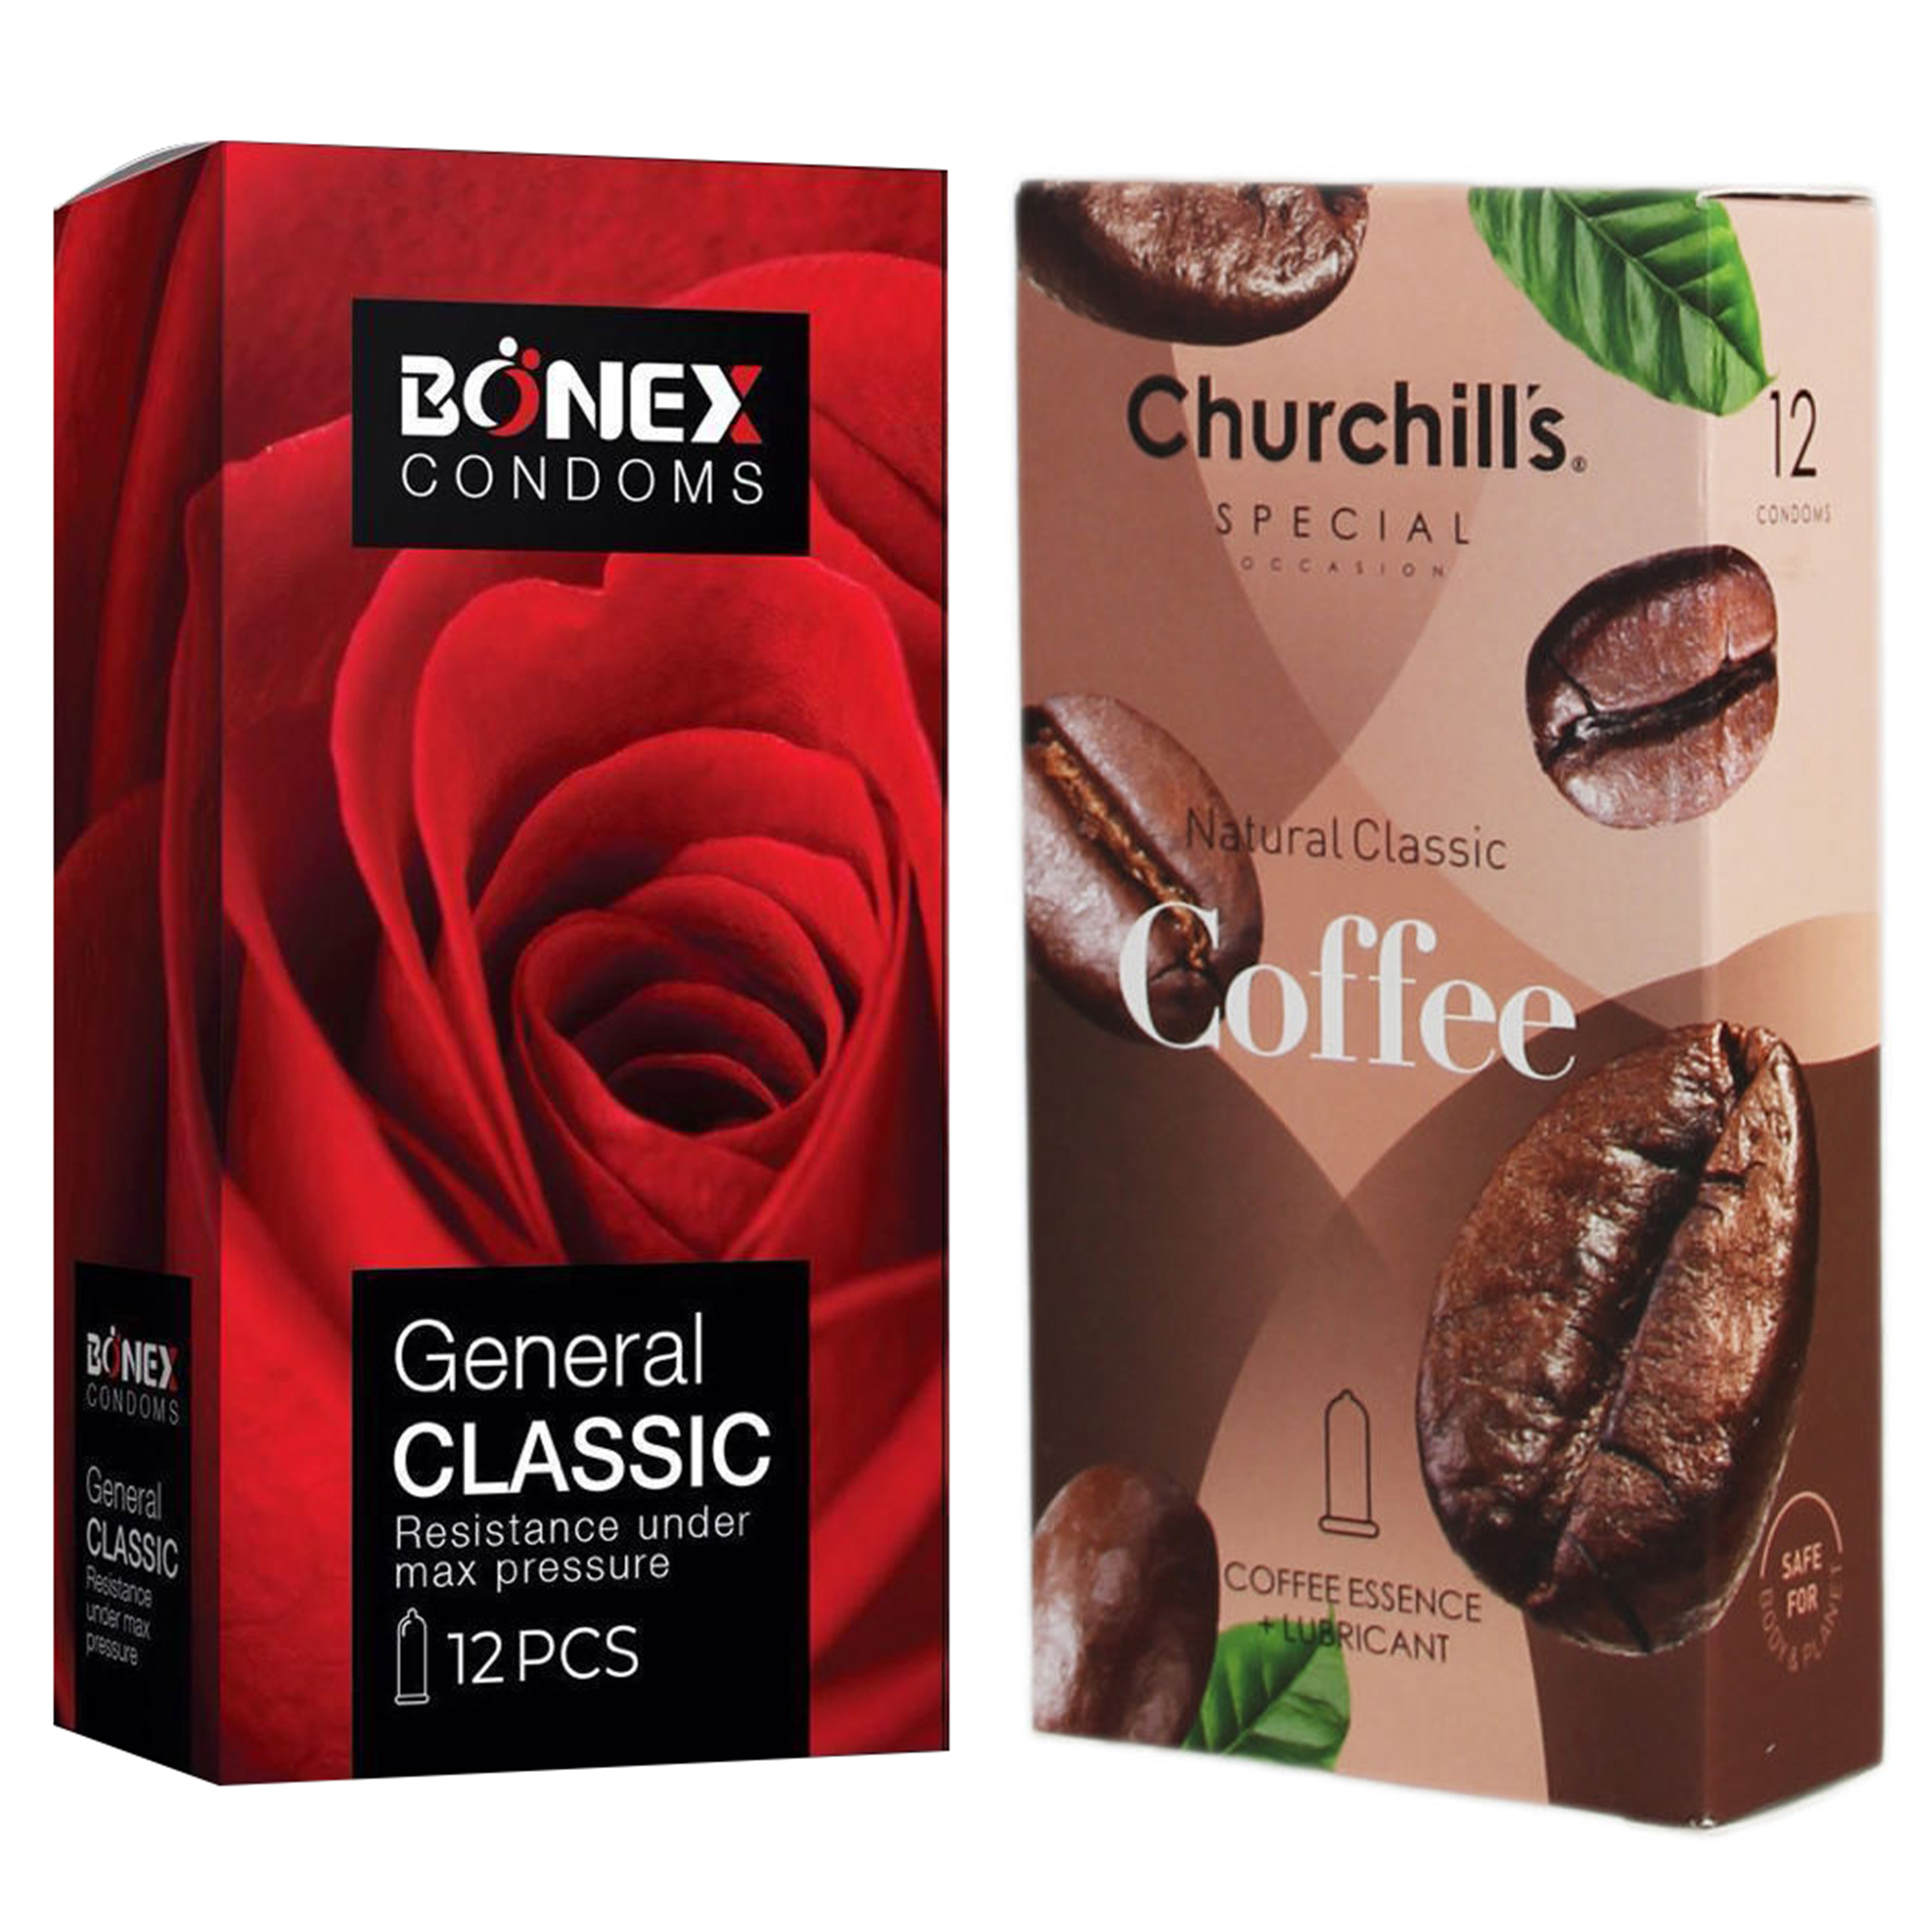 کاندوم چرچیلز مدل Coffee بسته 12 عددی به همراه کاندوم بونکس مدل General Classic بسته 12 عددی 